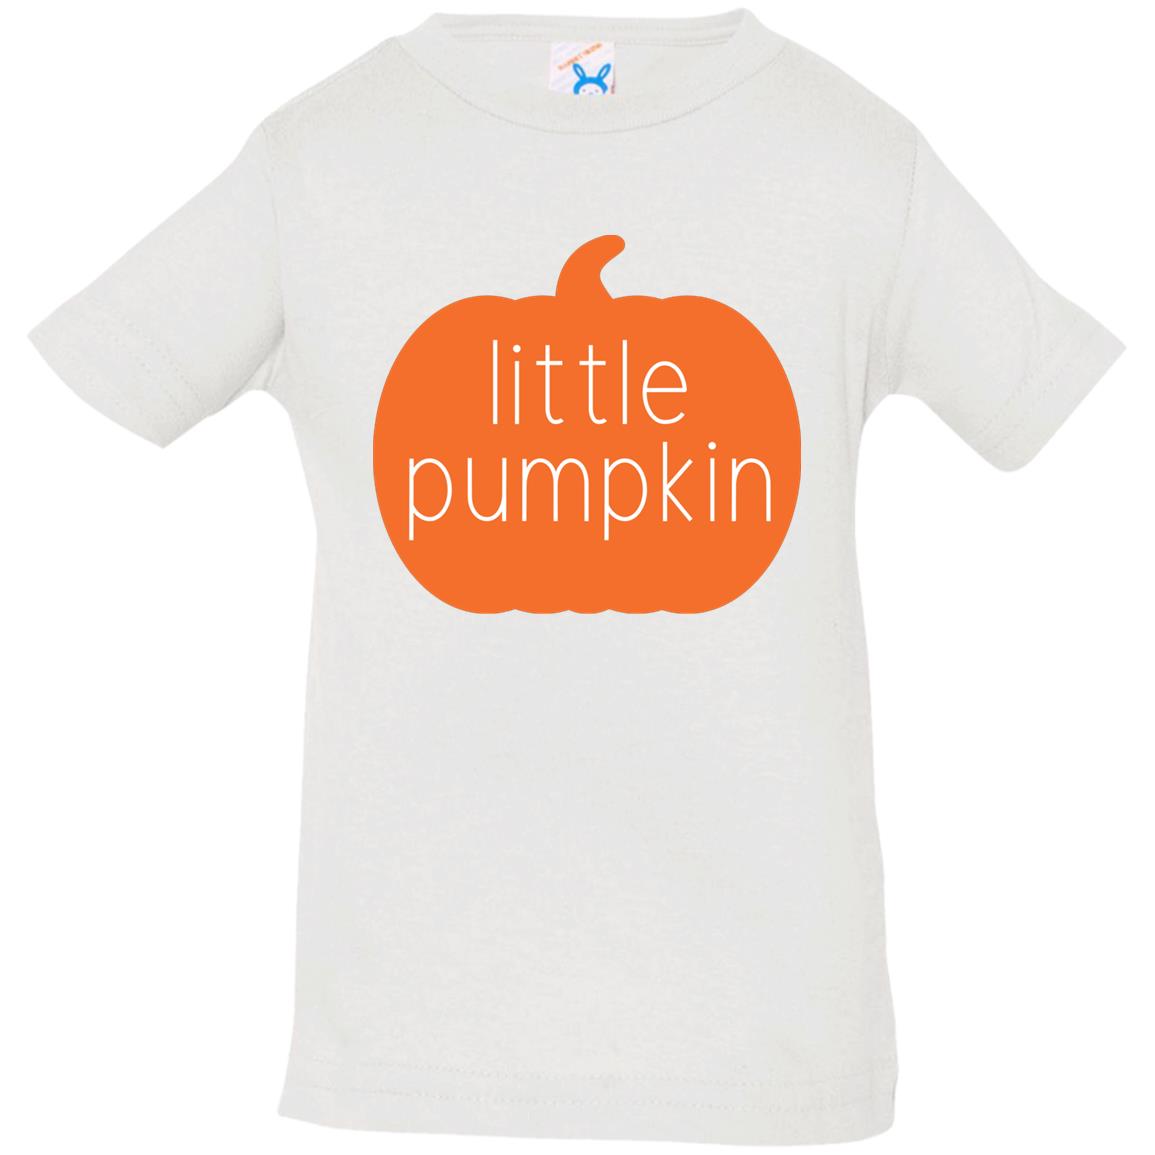 Little Pumpkin T-Shirt | Infant and Toddler